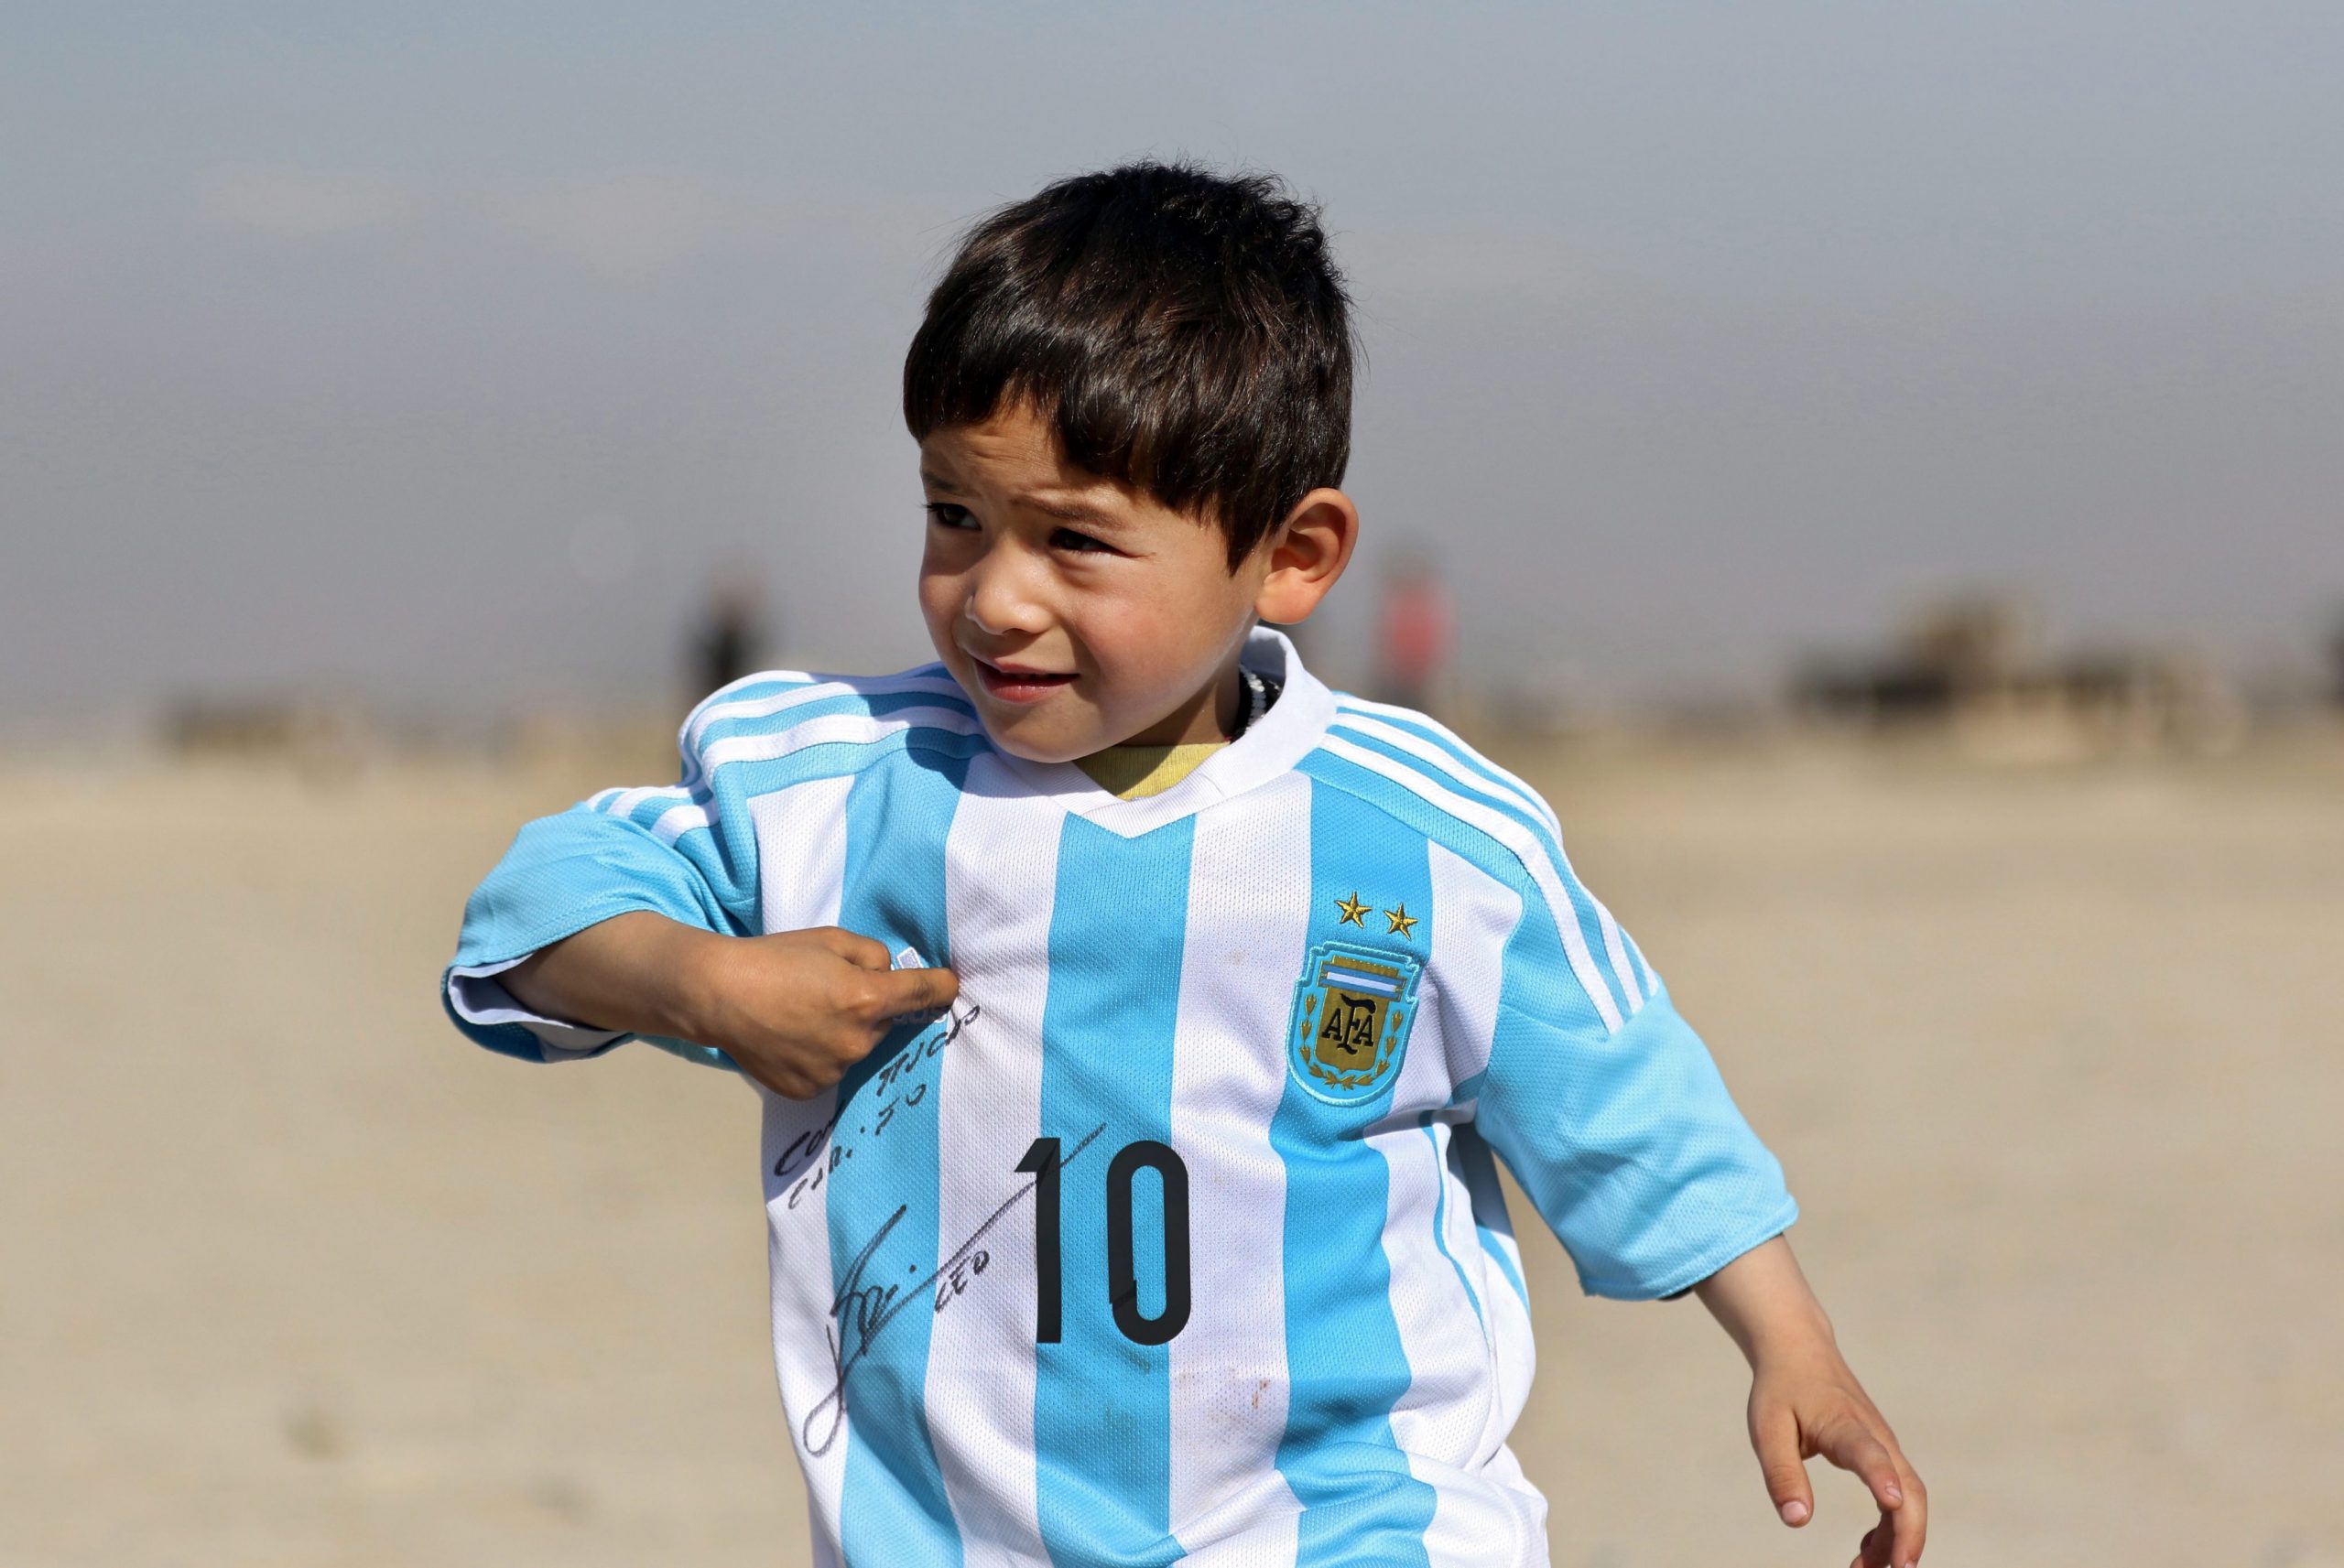 Foto: EPA. De 5-jarige Murtaza Ahmadi, een jonge Messi-fan uit Afghanistan. 